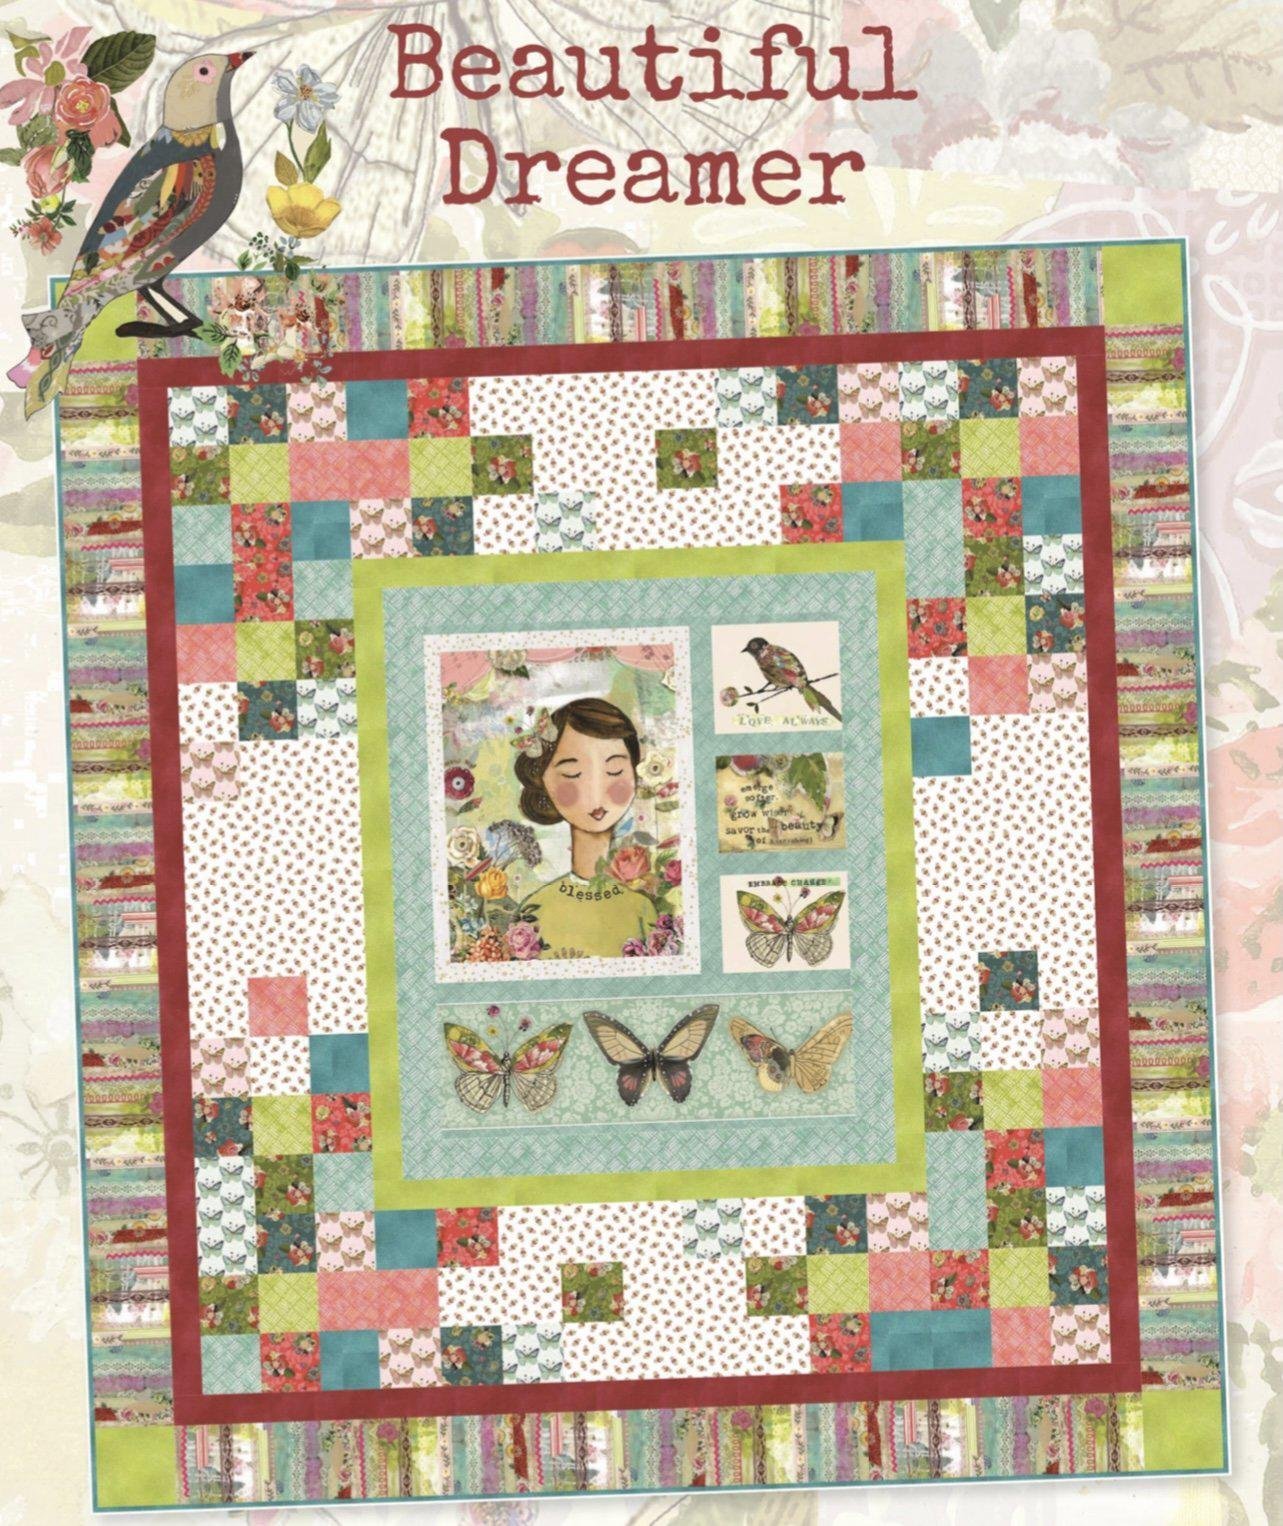 Beautiful-Dreamer-Quilt-Pattern-Free-Digital-Download-Benartex-Fabrics-2_cad9ed99-5418-4554-9ea7-69c855a1ec28_2000x.jpg